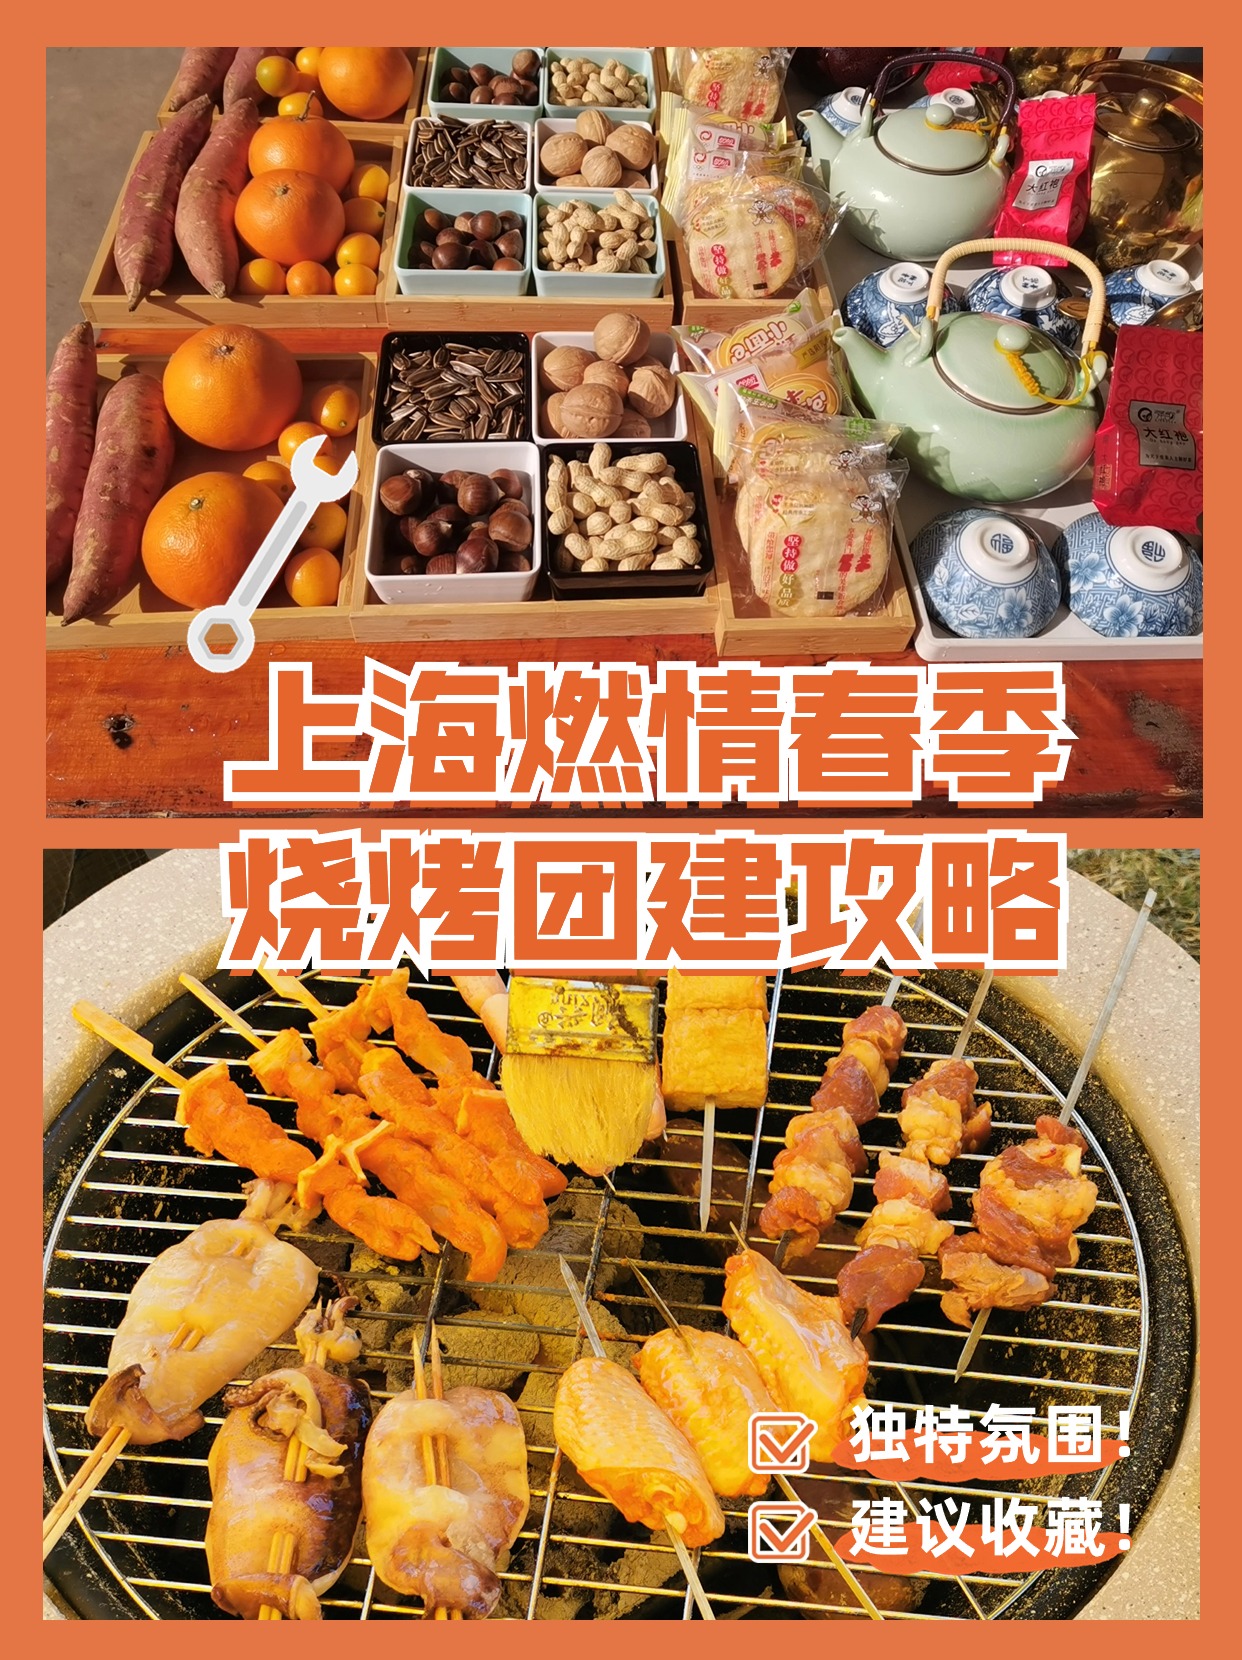 上海春季烧烤团建 拓展活动新玩法